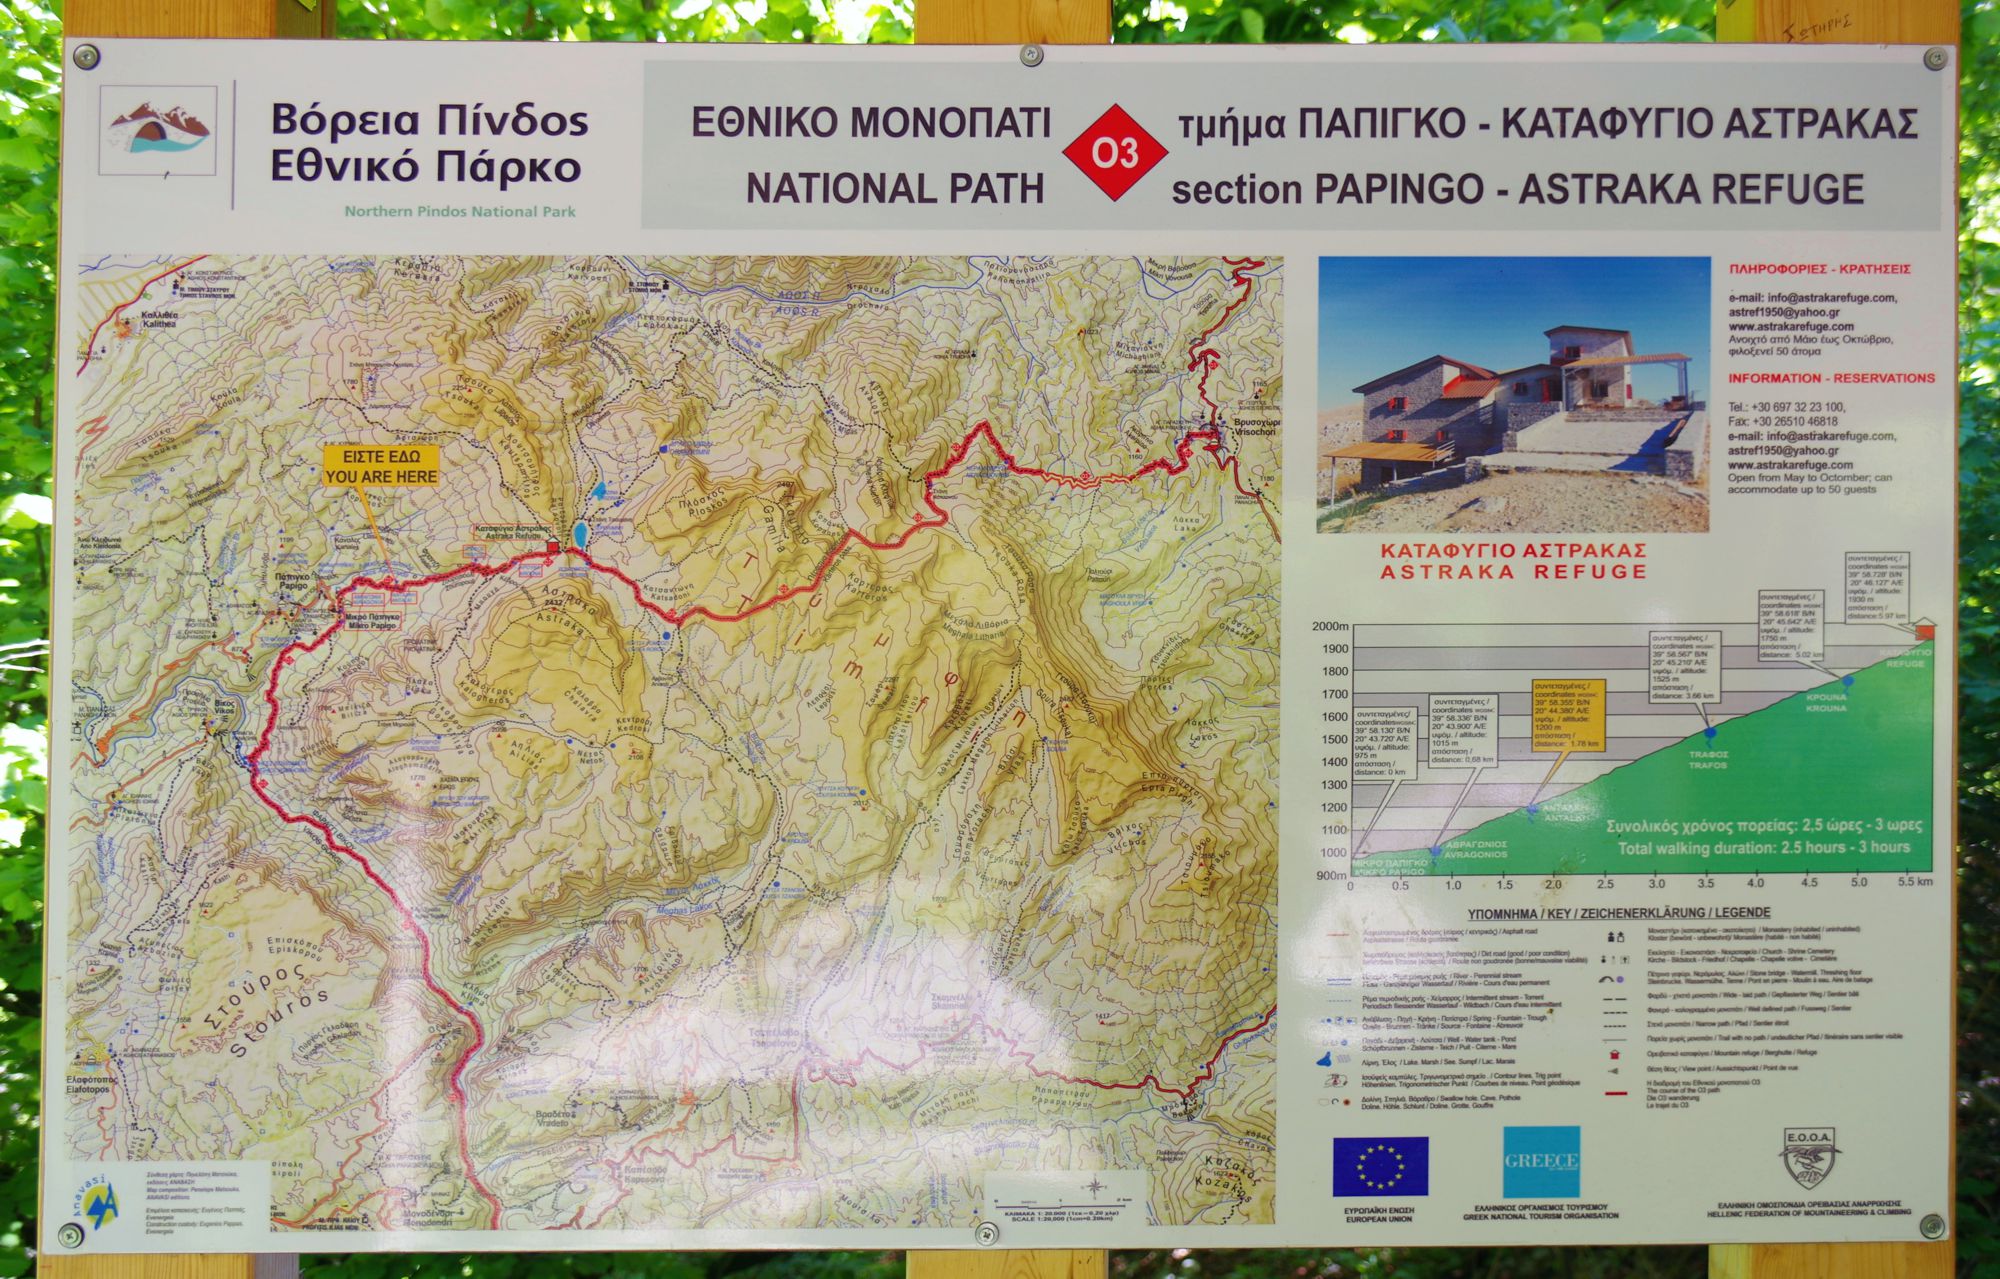 Epirus Trail: Καταφύγιο Αστράκας-Μεγάλο Πάπιγκο